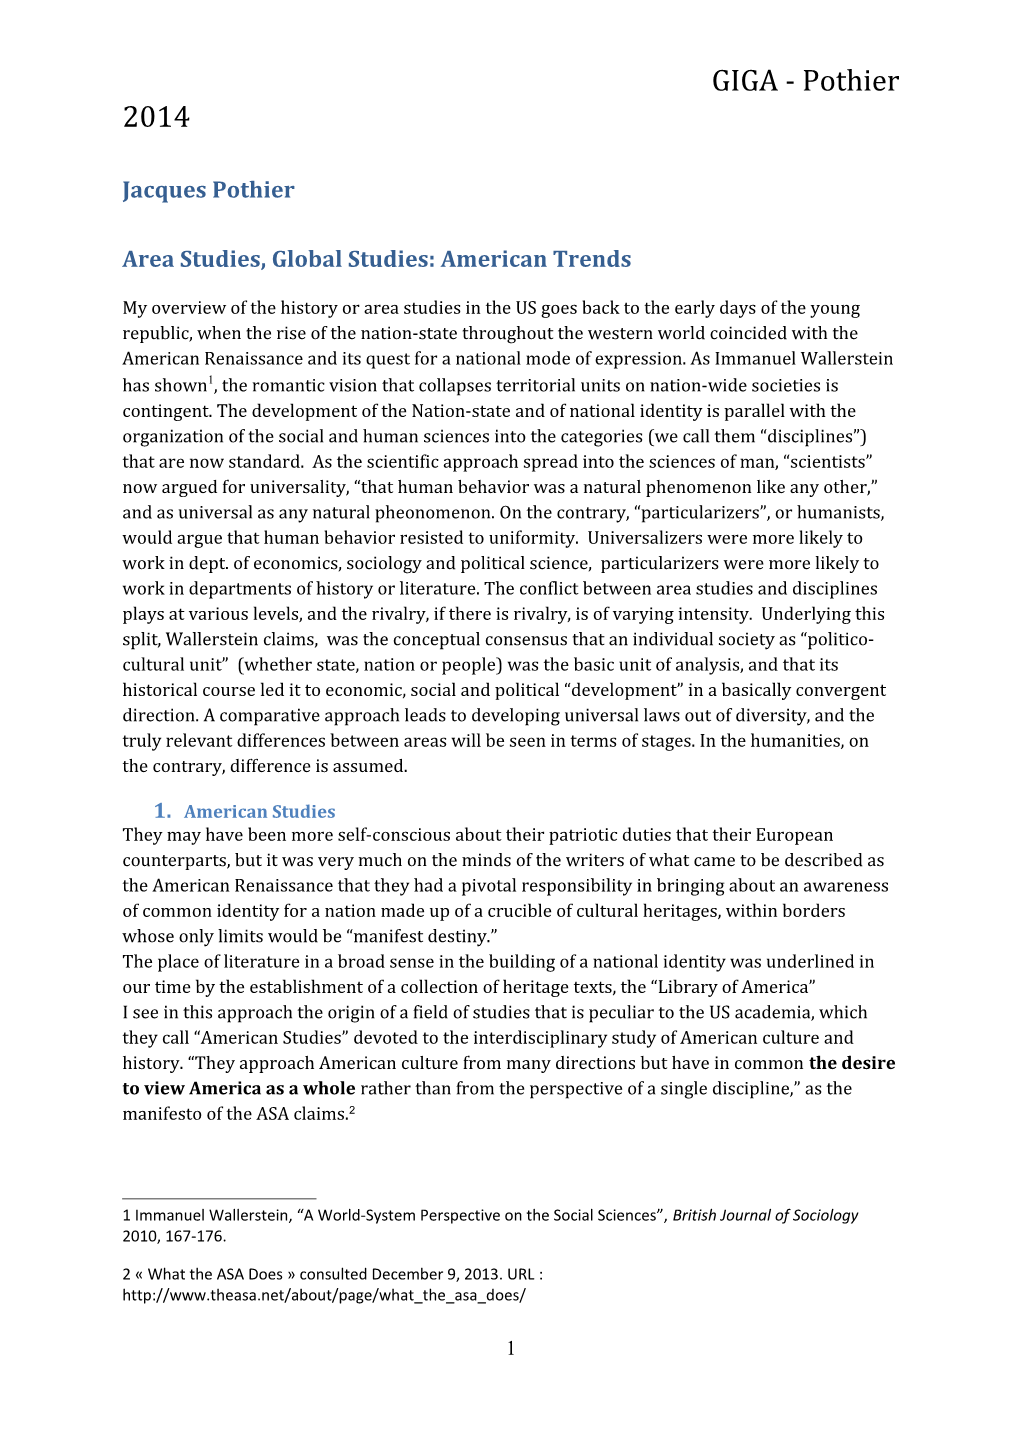 Area Studies, Global Studies: American Trends